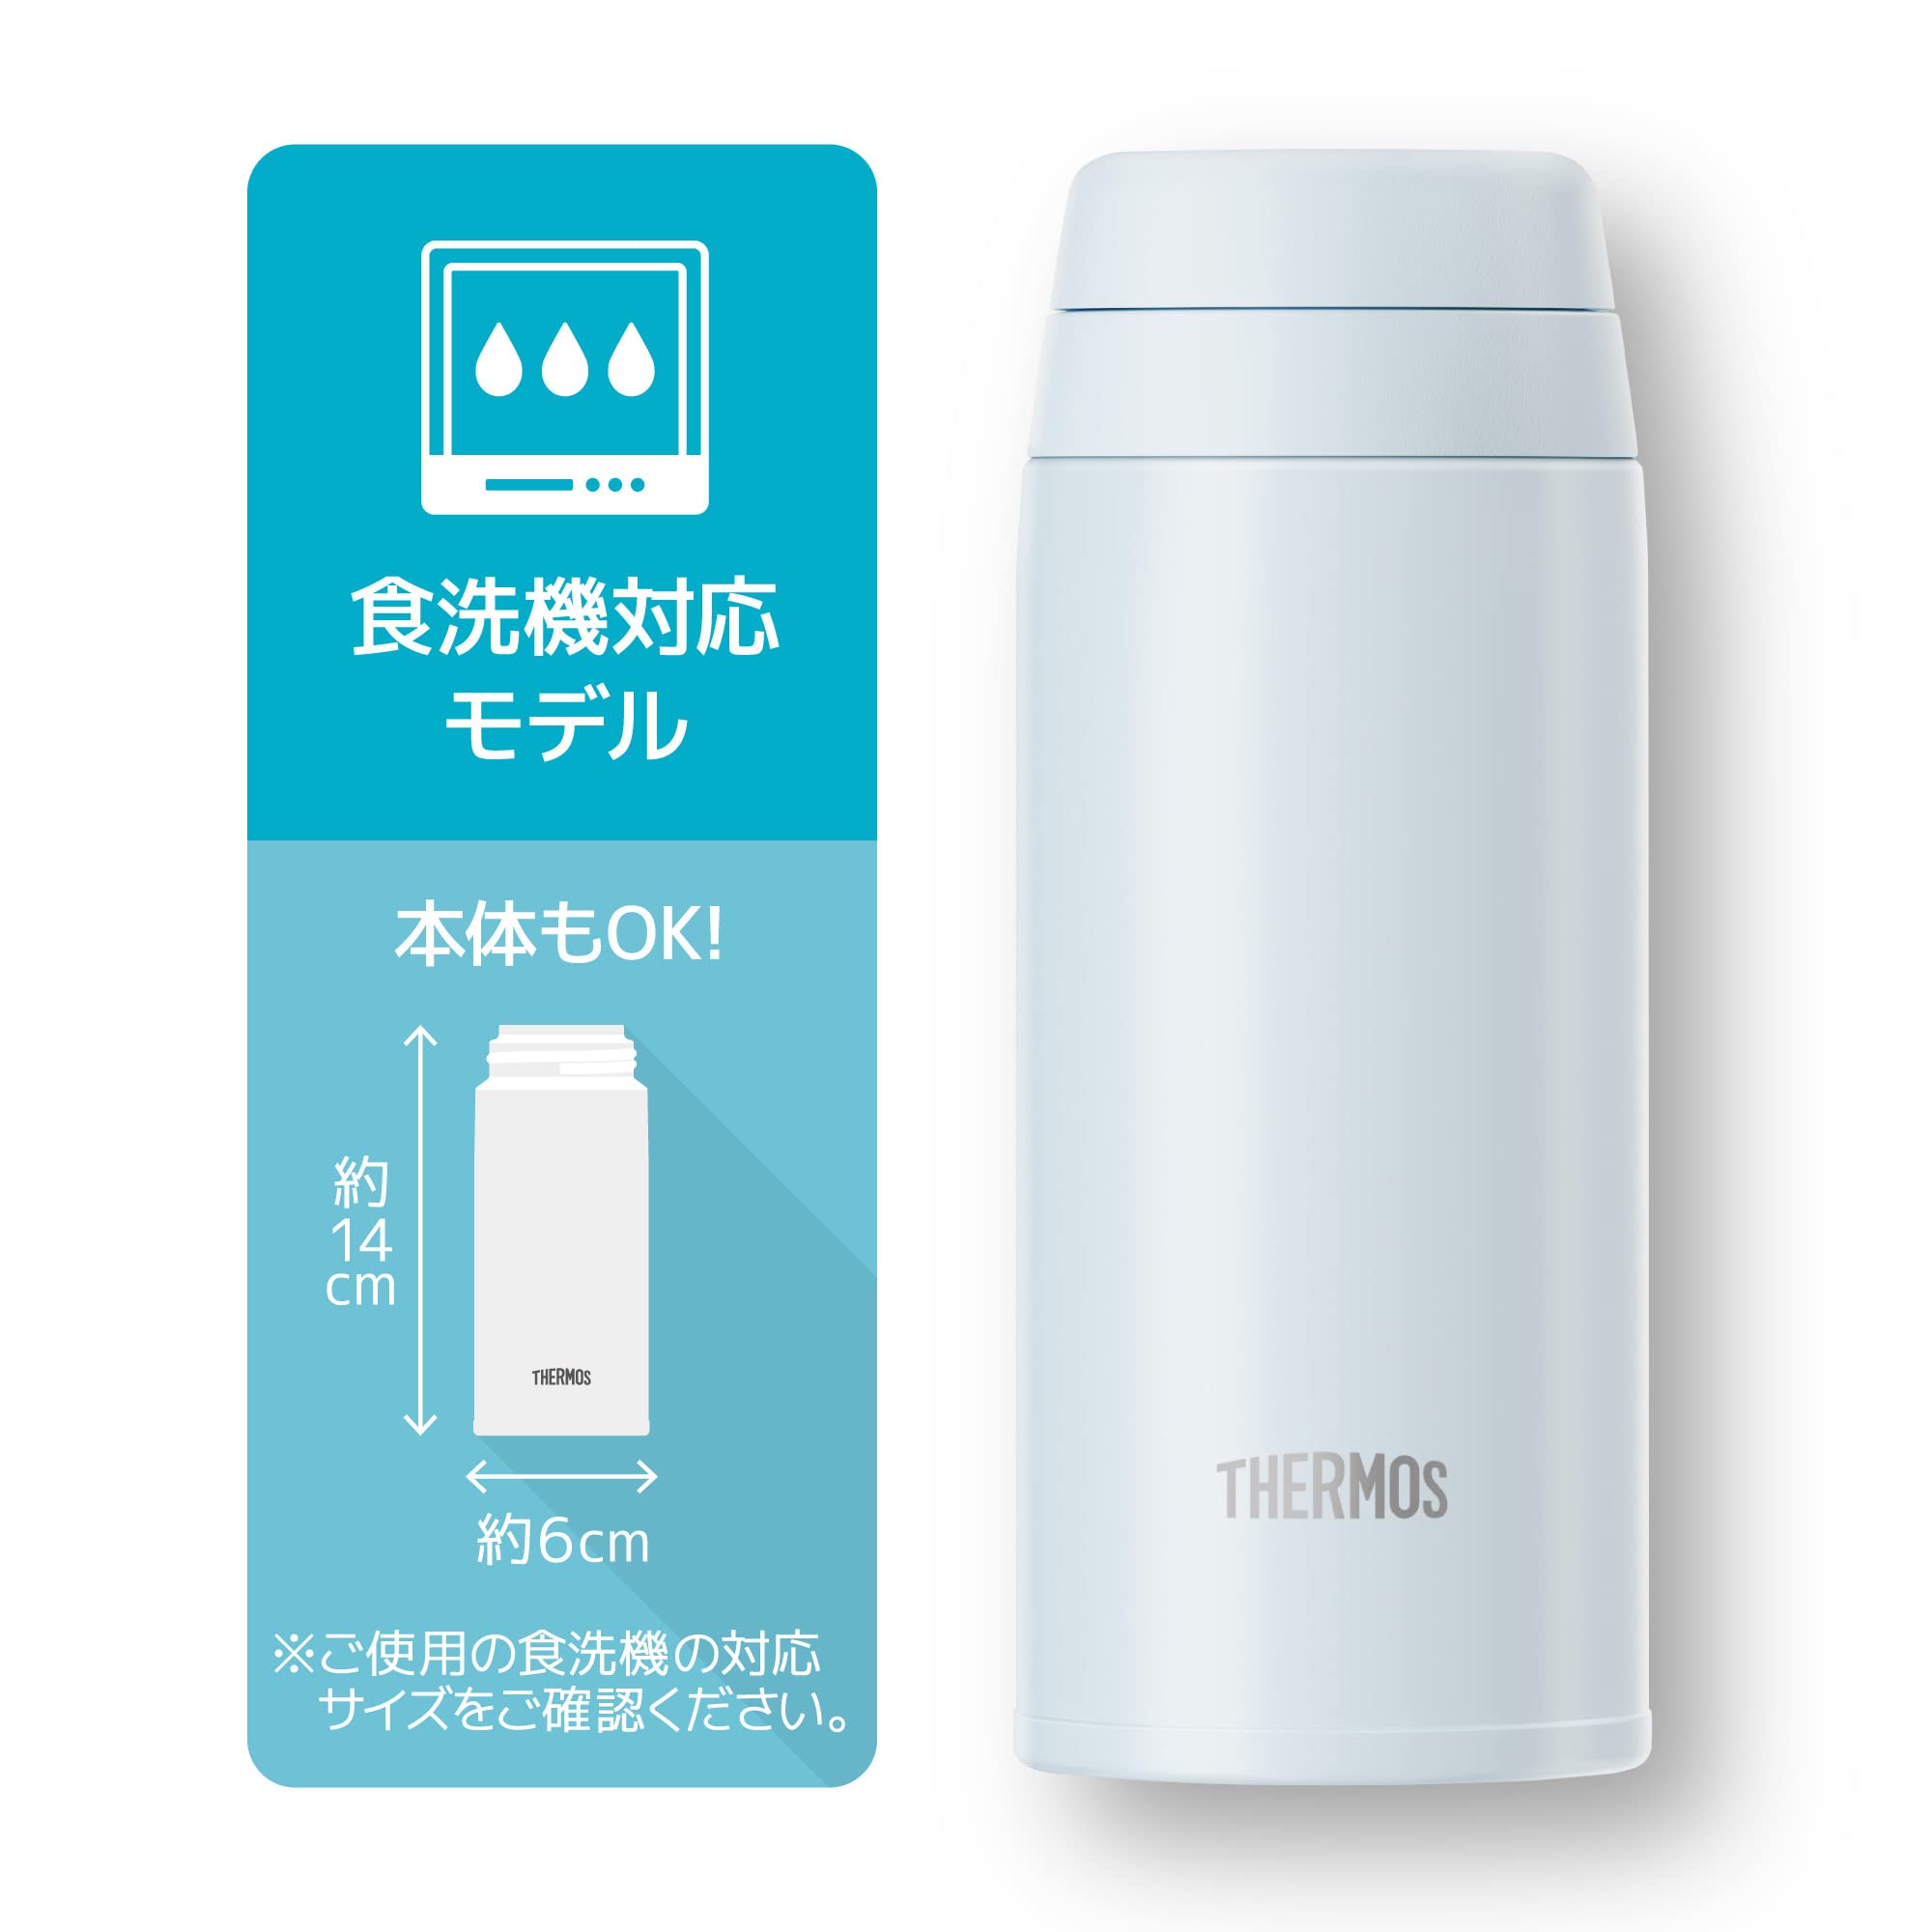 Thermos JOR-250 WHGY Water Bottle 250ml White Gray